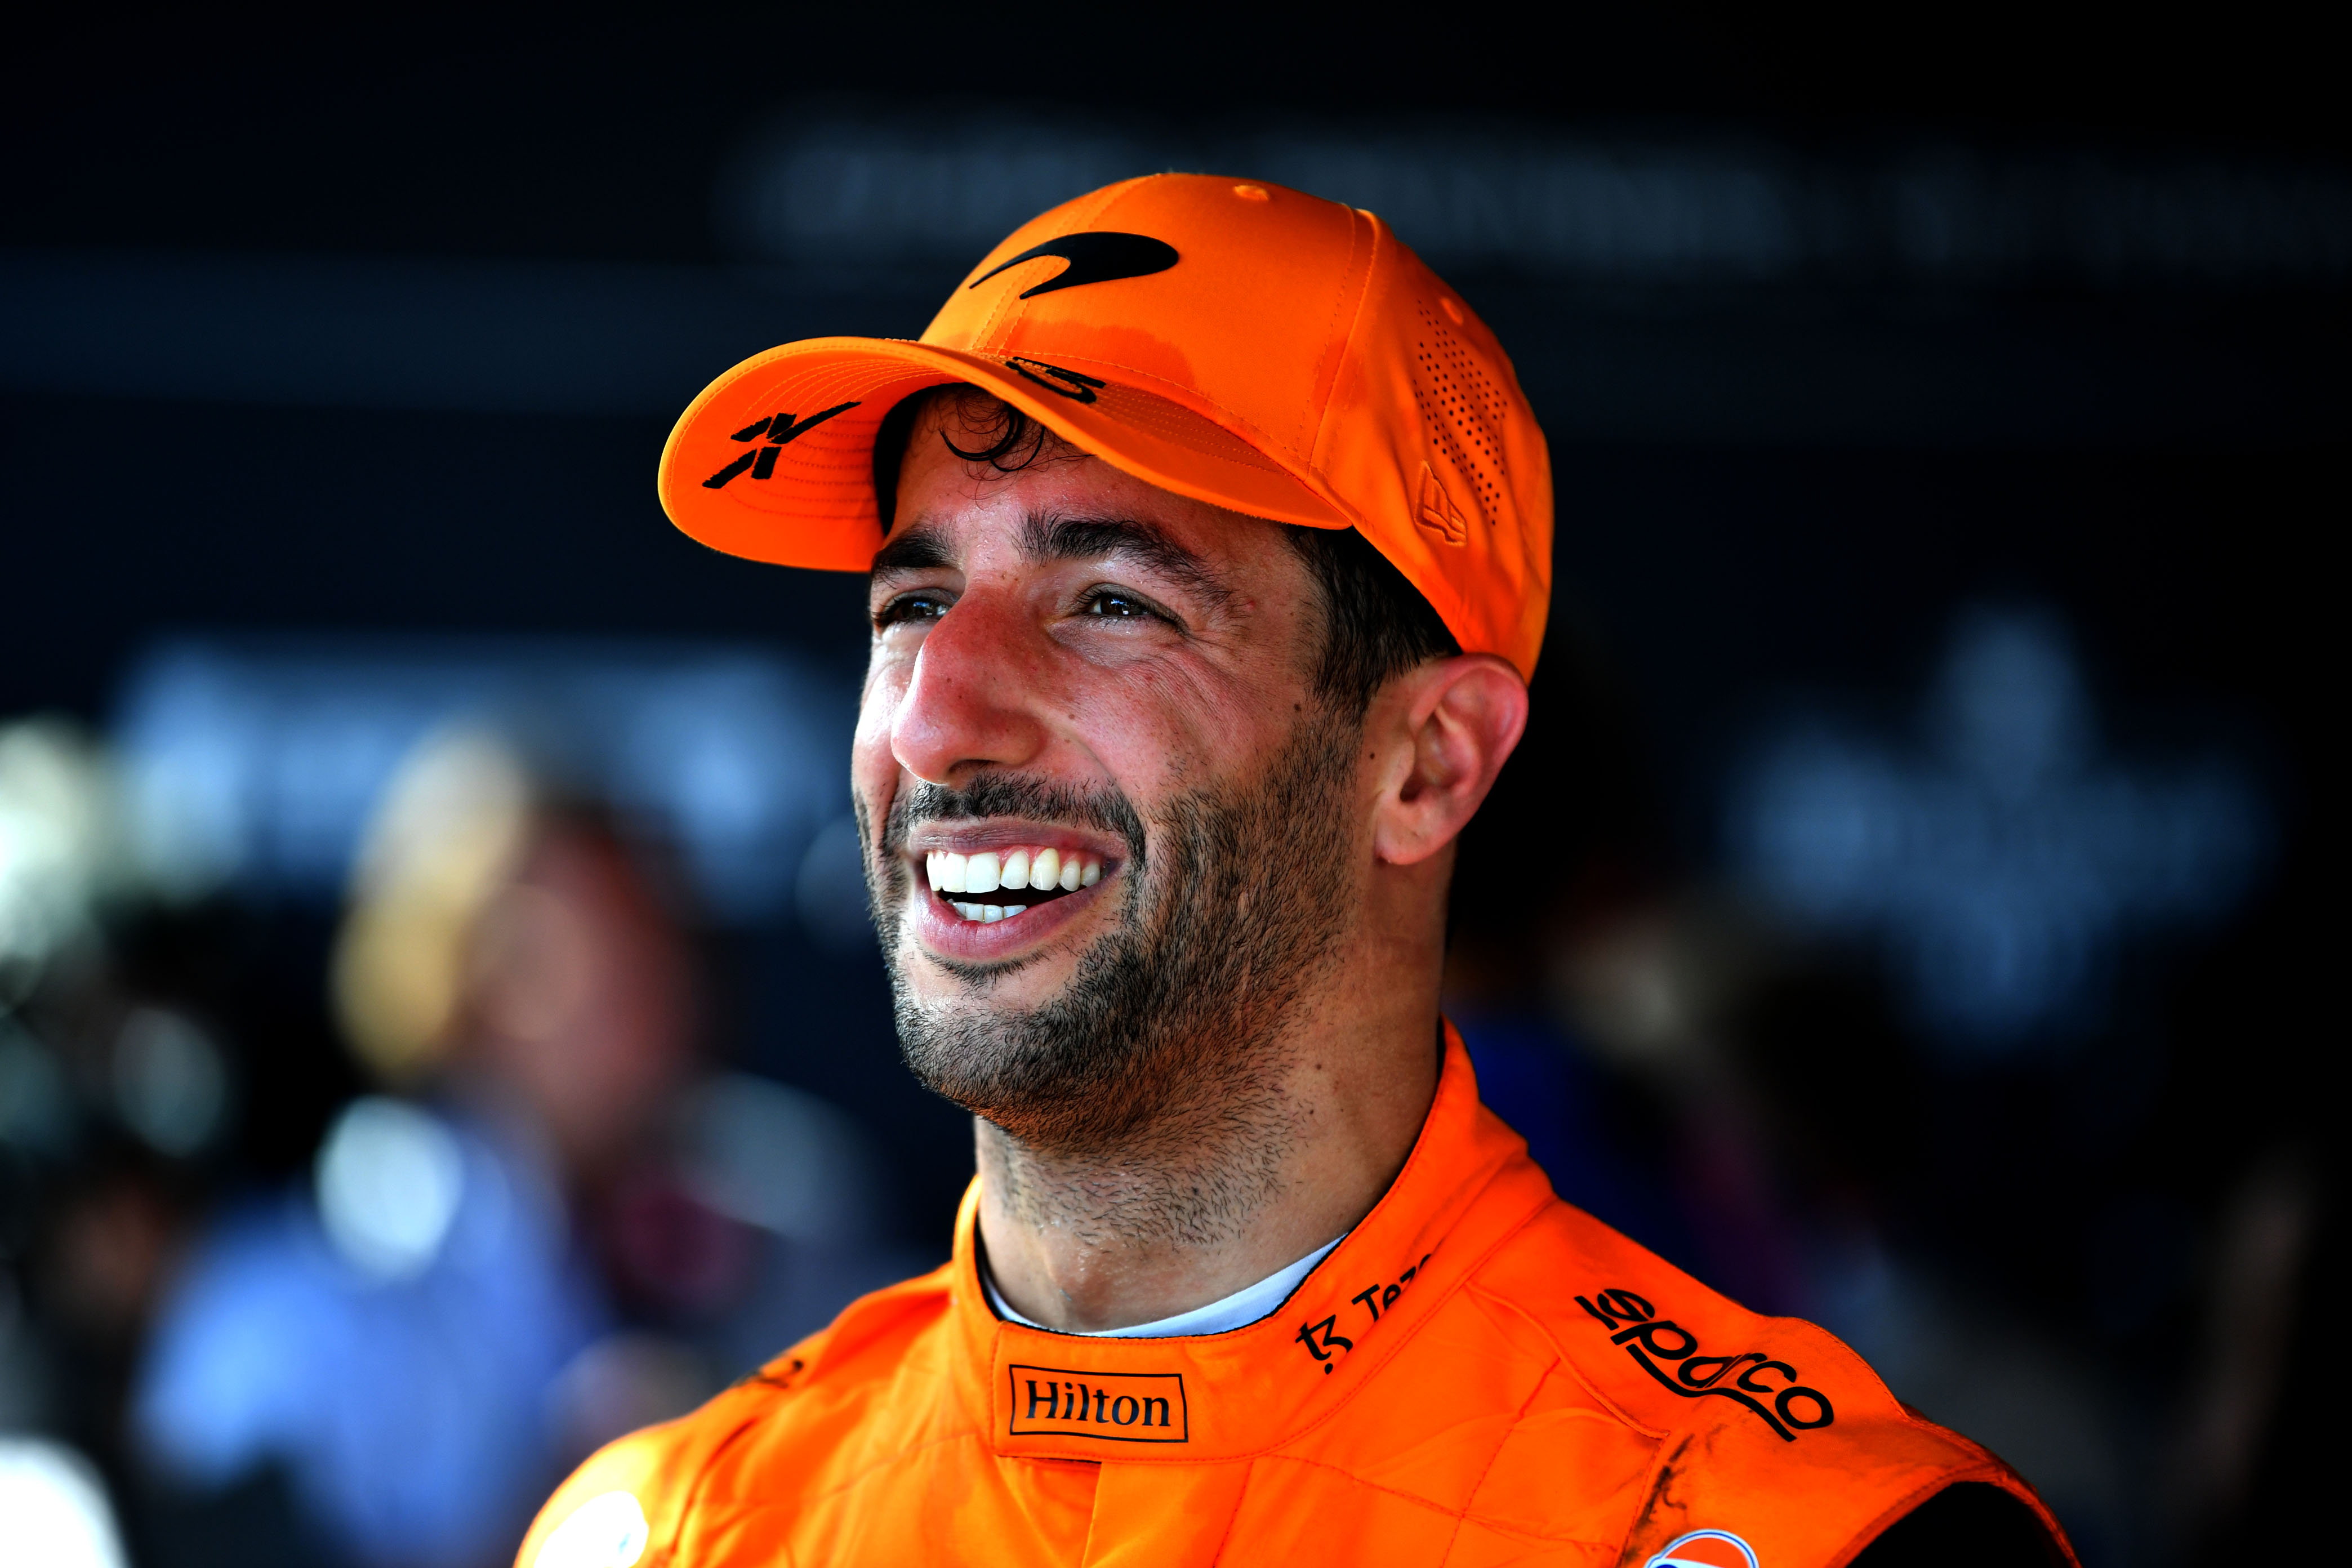 Ricciardo wyjaśnił, dlaczego oświadczył, że nie opuści McLarena